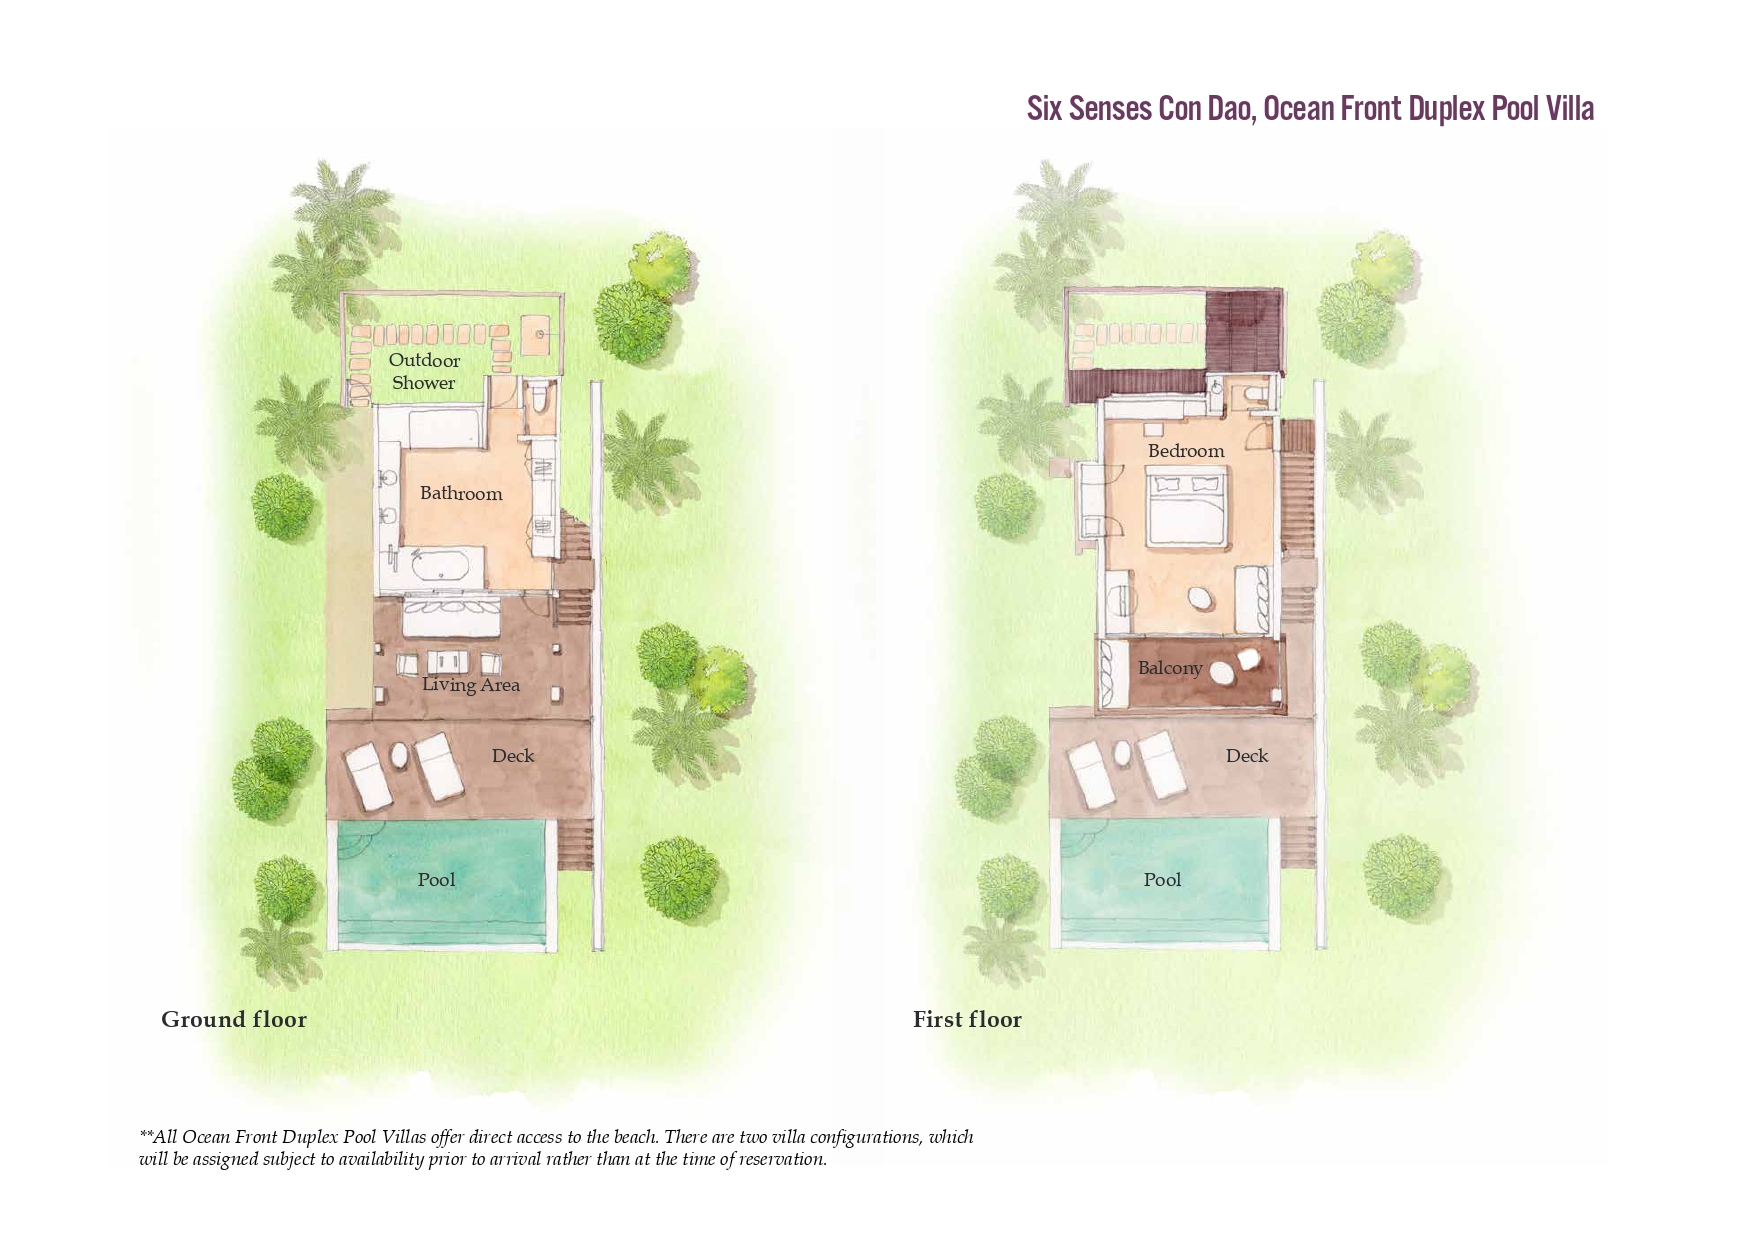 giá phòng Six Senses Resort Côn Đảo 2022 7